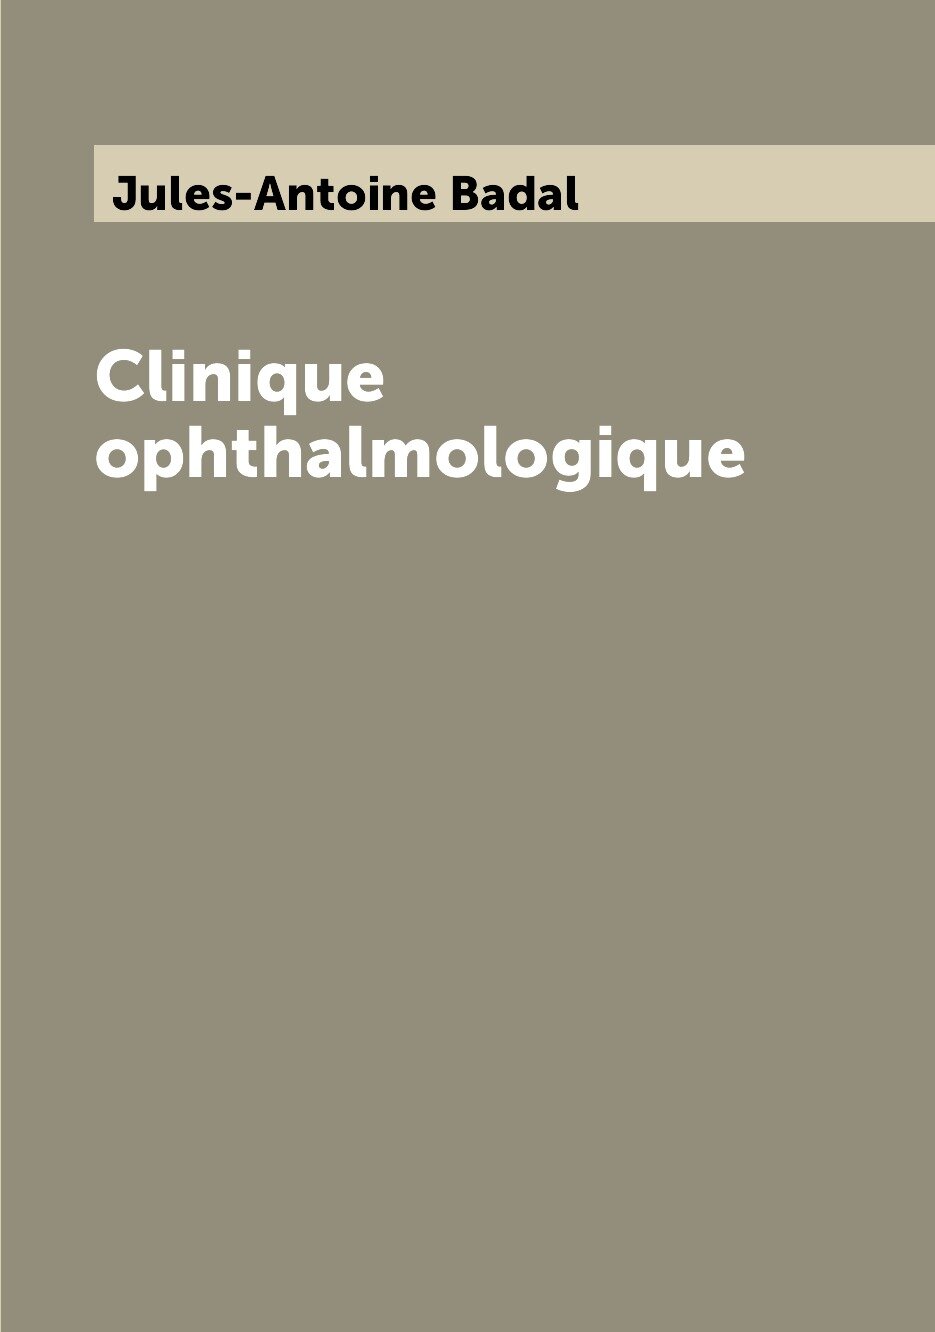 Clinique ophthalmologique